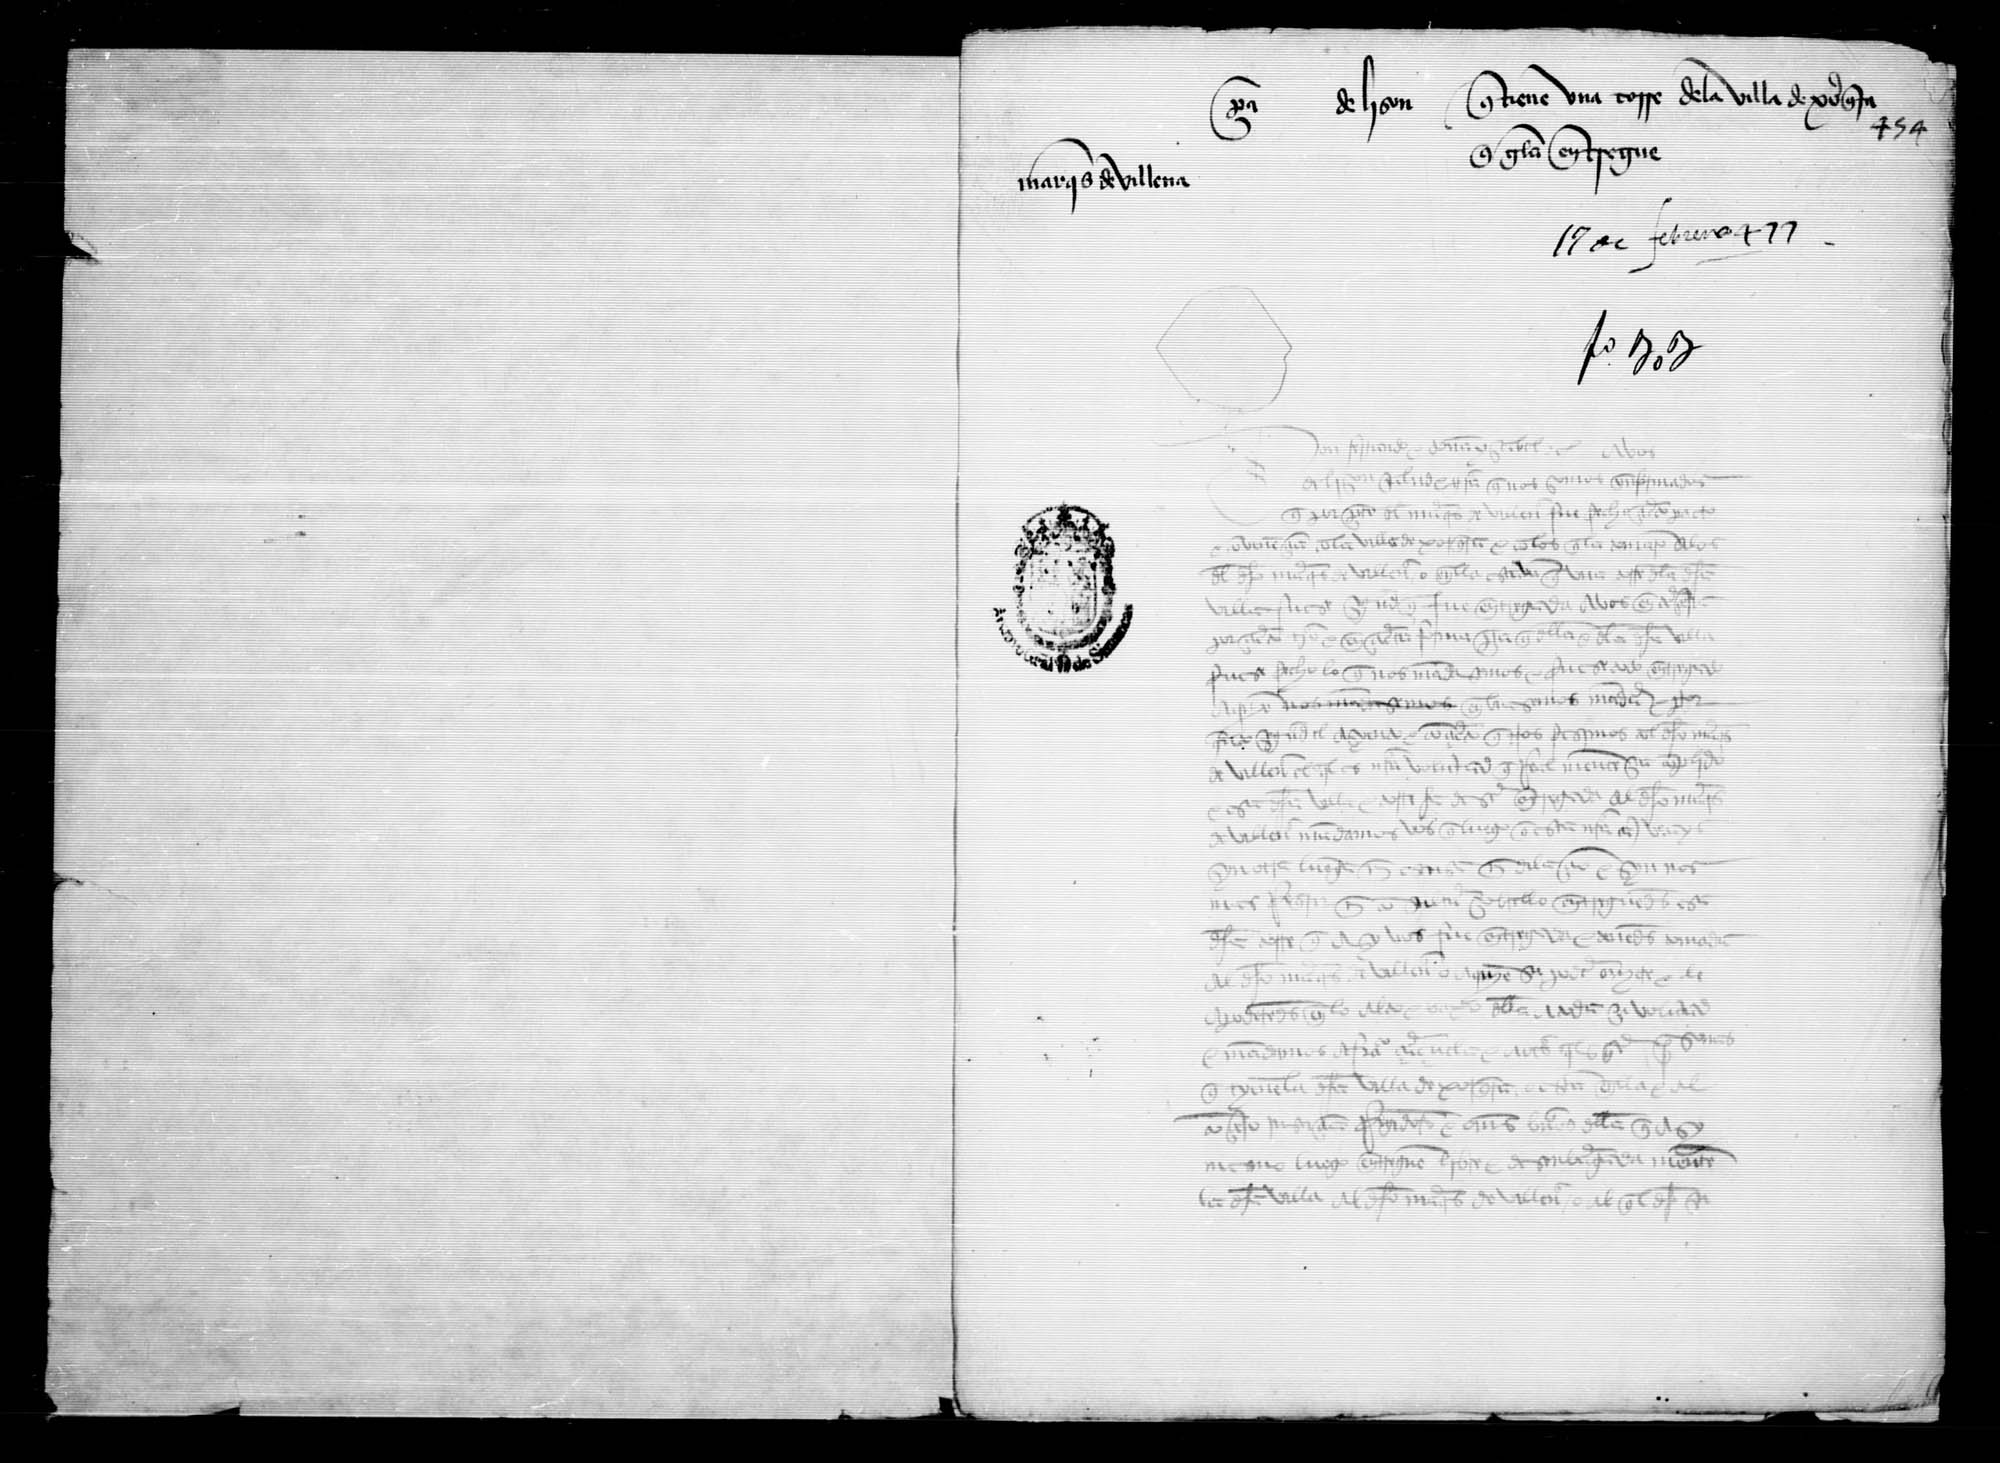 Carta a (en blanco) de Lisón, a petición del marqués de Villena, para que entregue a éste una torre que tiene ocupada en la villa de Jorquera.